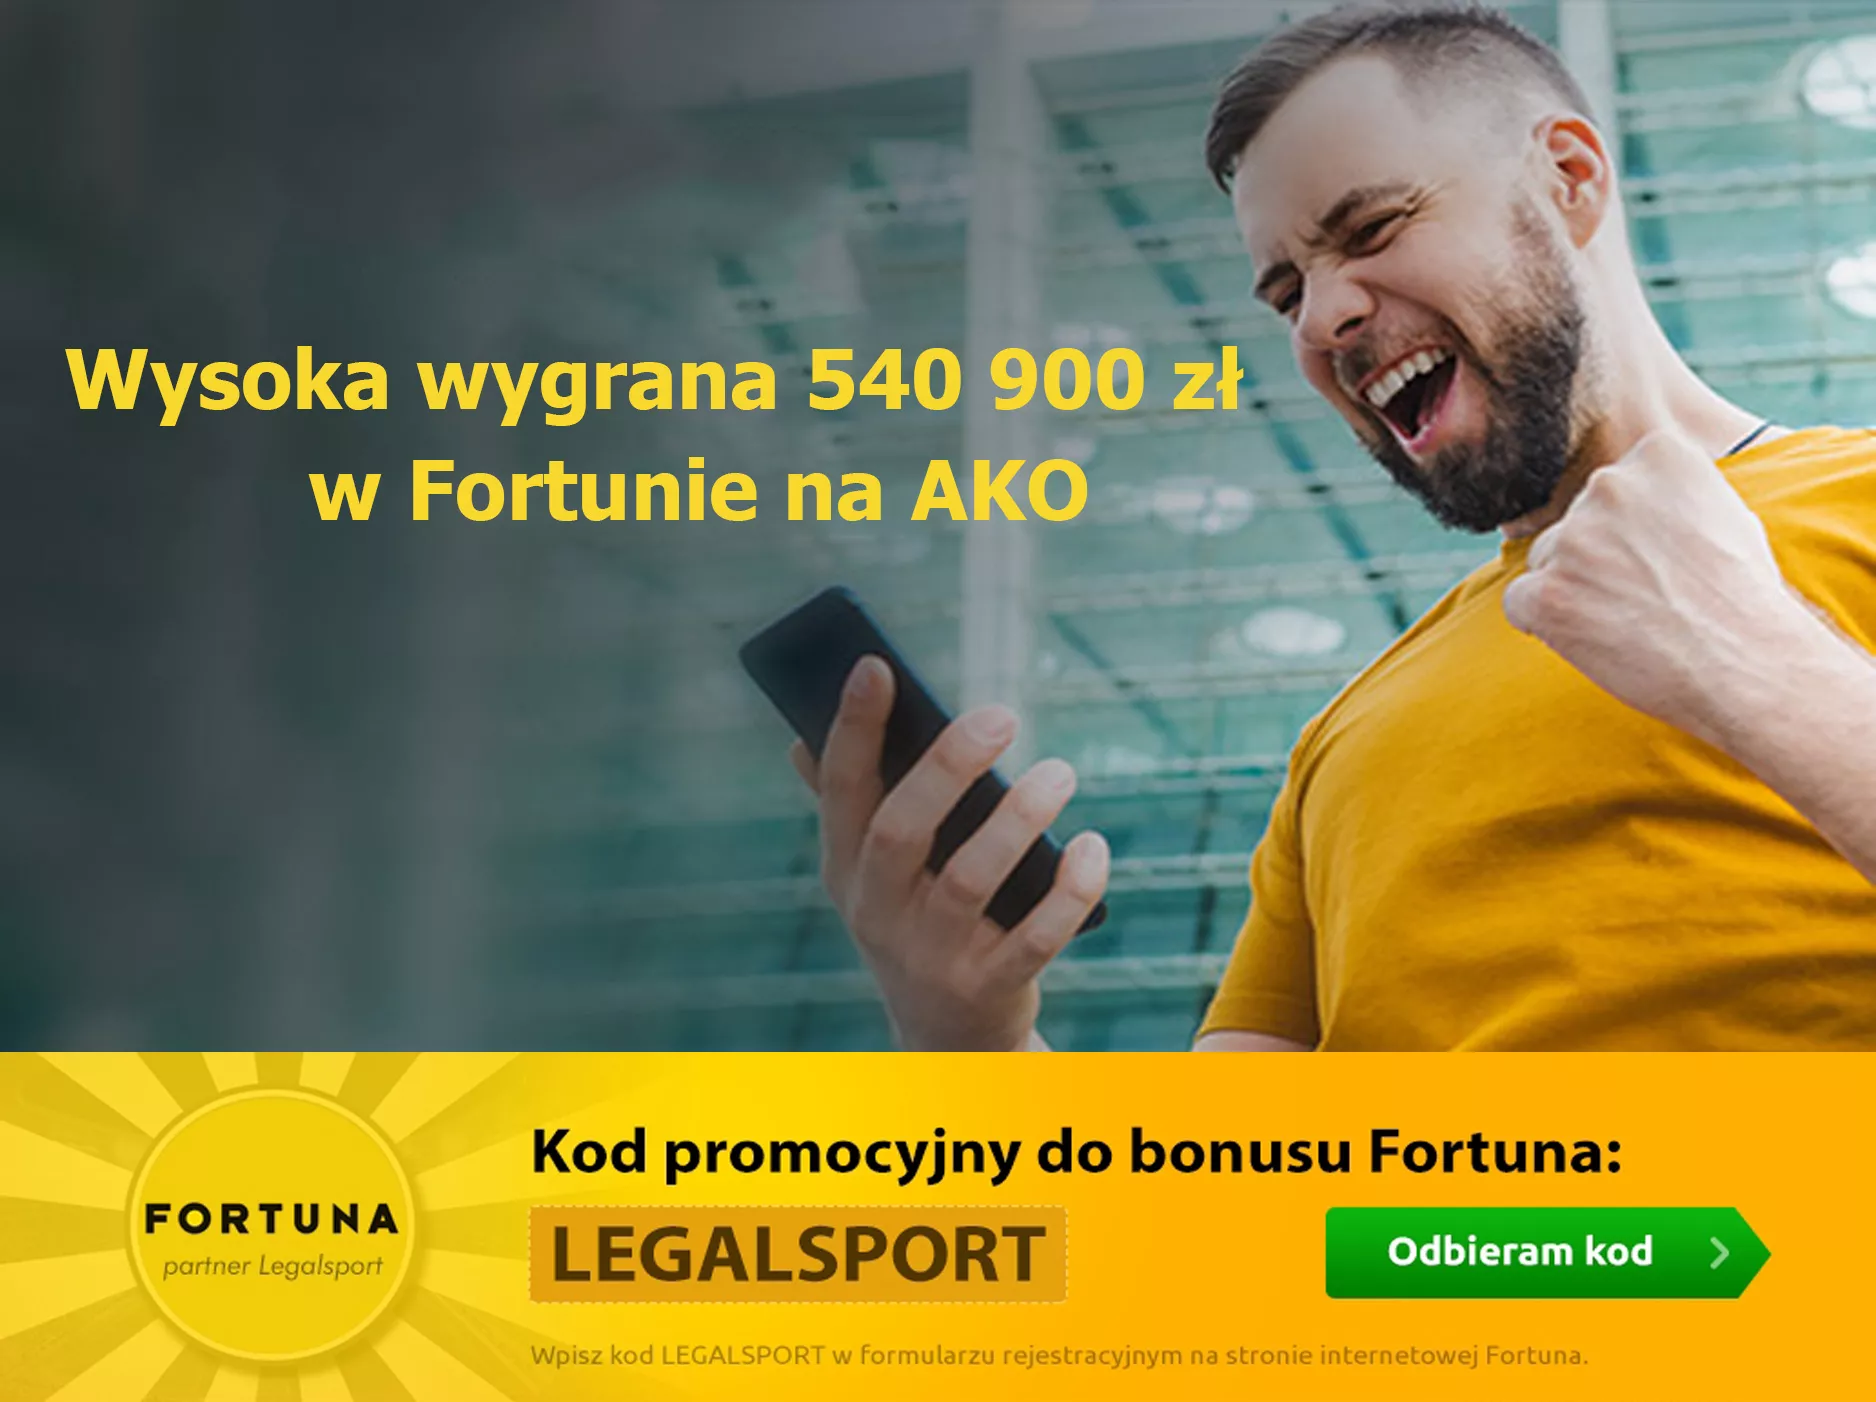 Wygrana ponad 500 000 zł w Fortuna Zakłady Bukmacherskie. Szczęśliwa wygrana na kuponie AKO